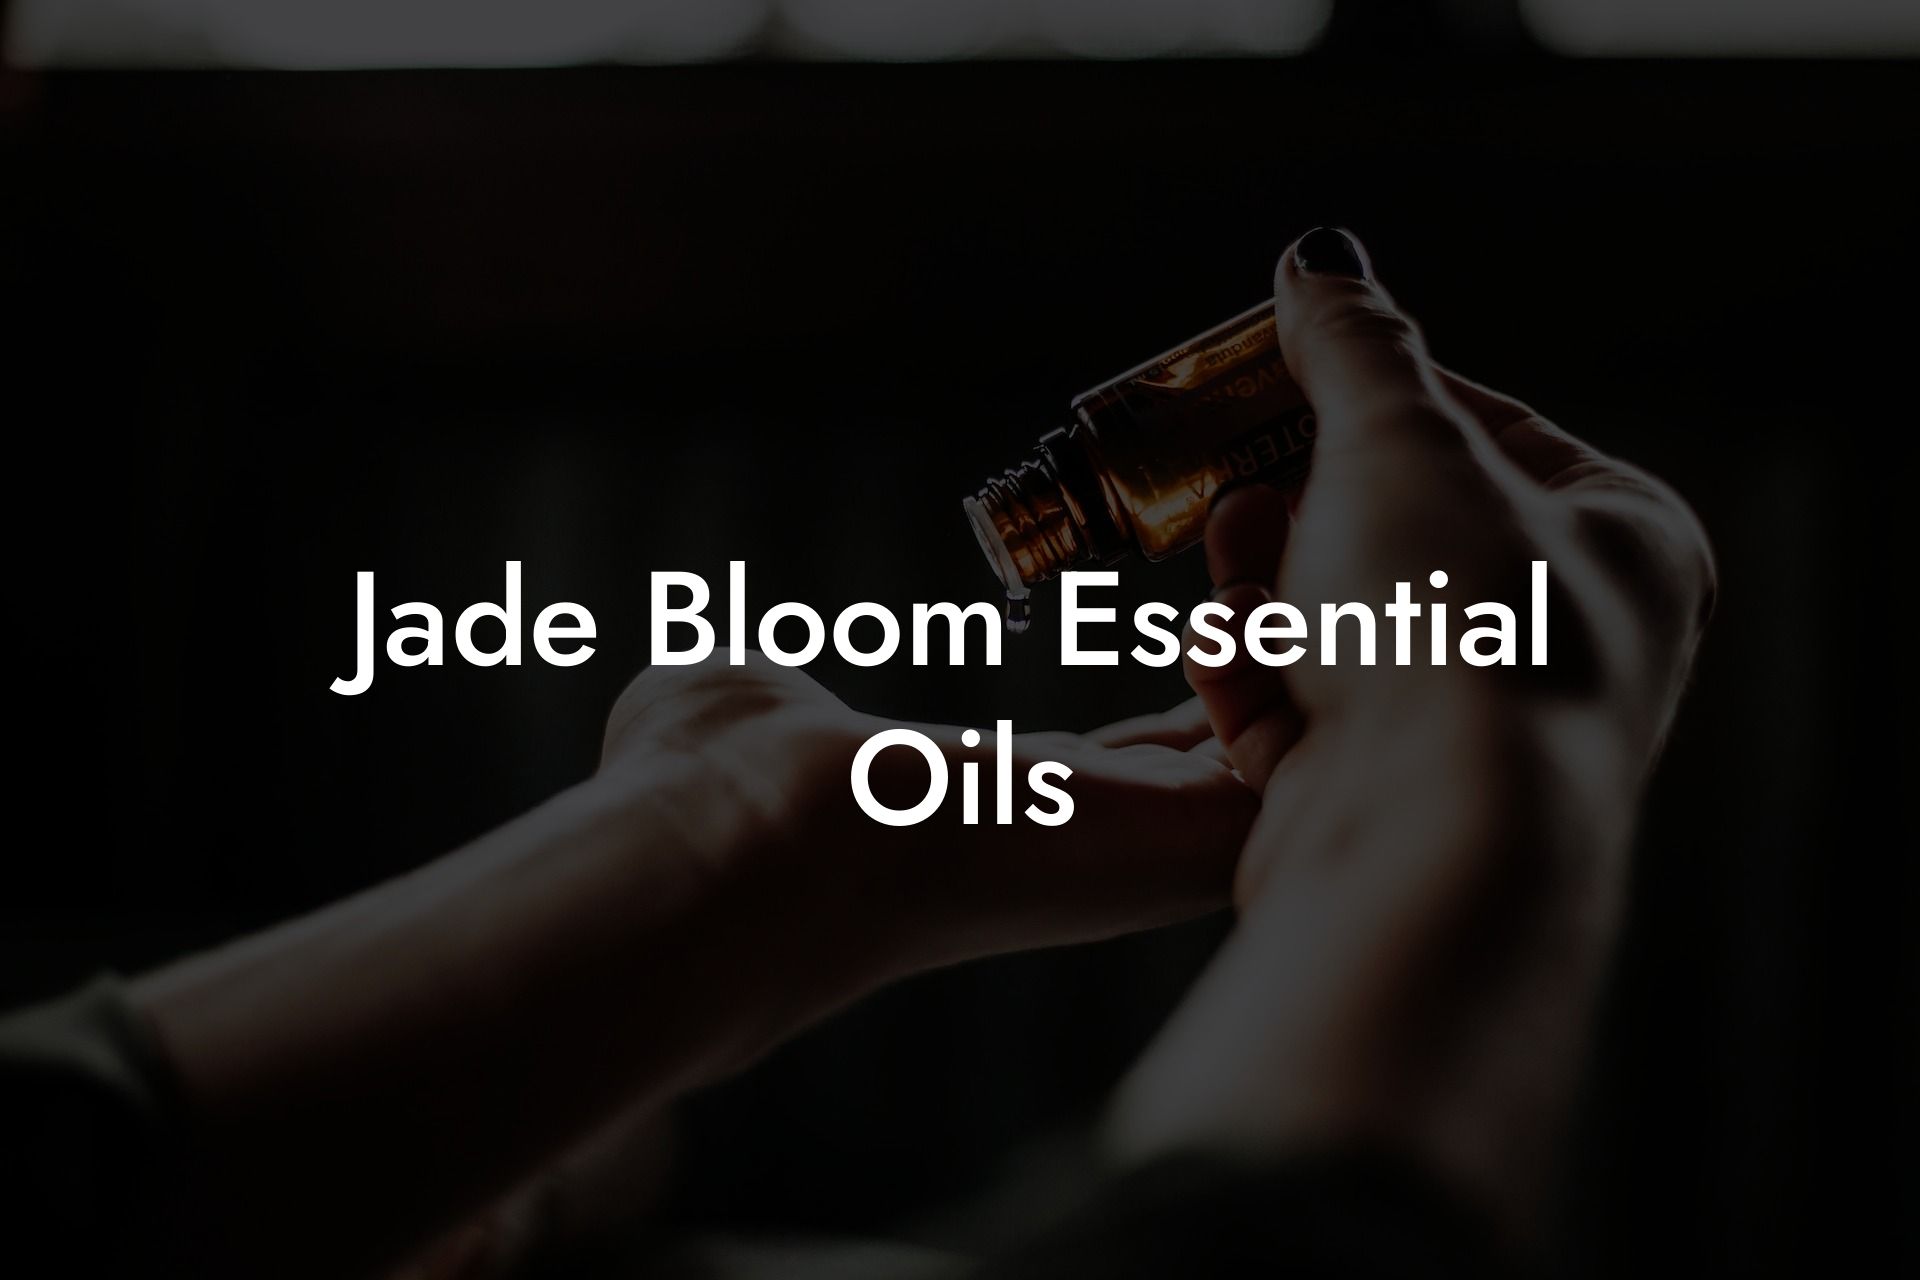 Jade Bloom Essential Oils